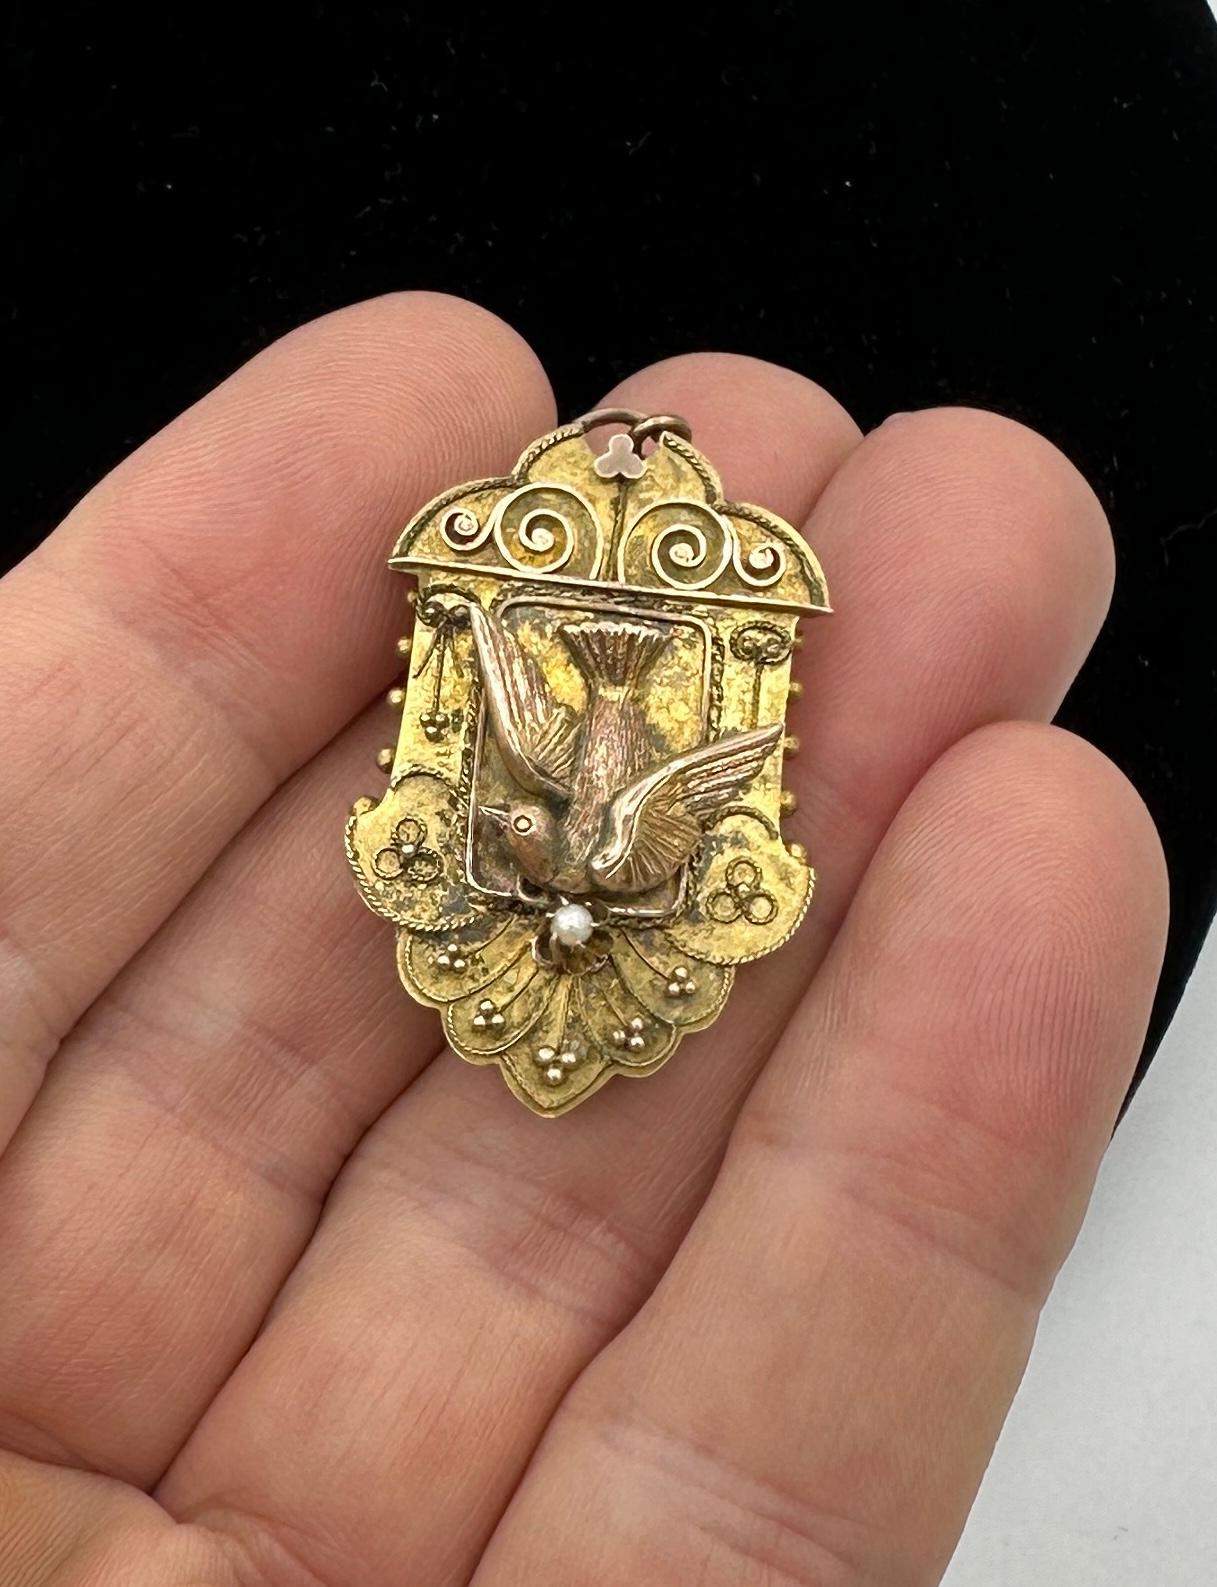 Dies ist eine wunderschöne und seltene antike viktorianische Vogel Taube Medaillon Anhänger Brosche in 10 Karat Gold mit einer Perle Tropfen in einem außergewöhnlichen Etruscan Revival dreidimensionalen Design mit dem fliegenden Vogel geschmückt. 